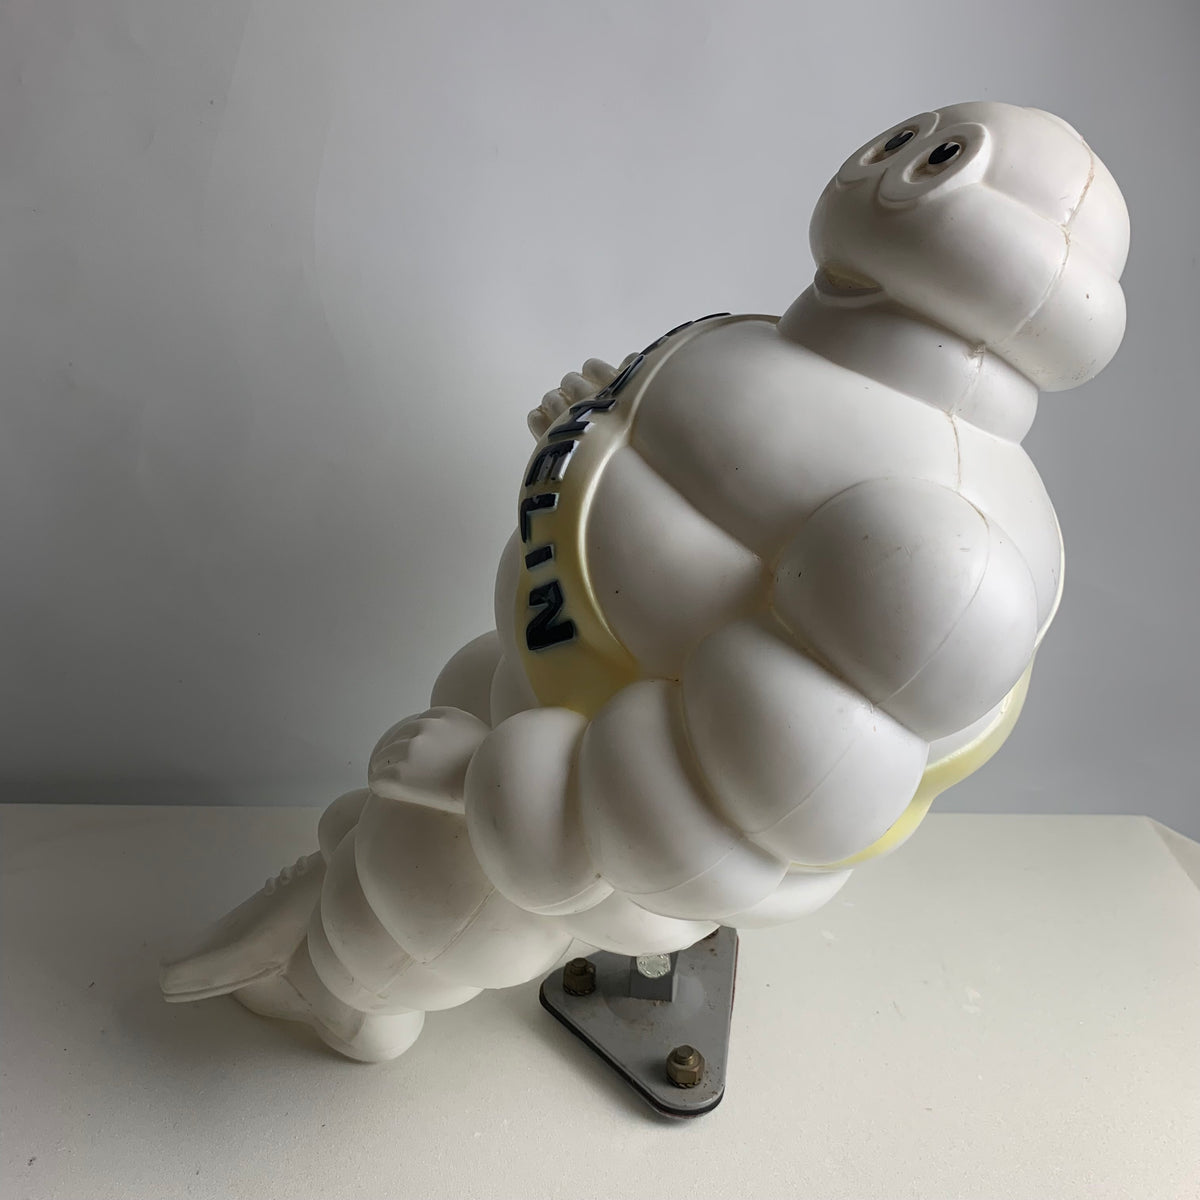 Großes Michelin Männchen Bibendum sitzend – Trödelfuchs Vintage Shop